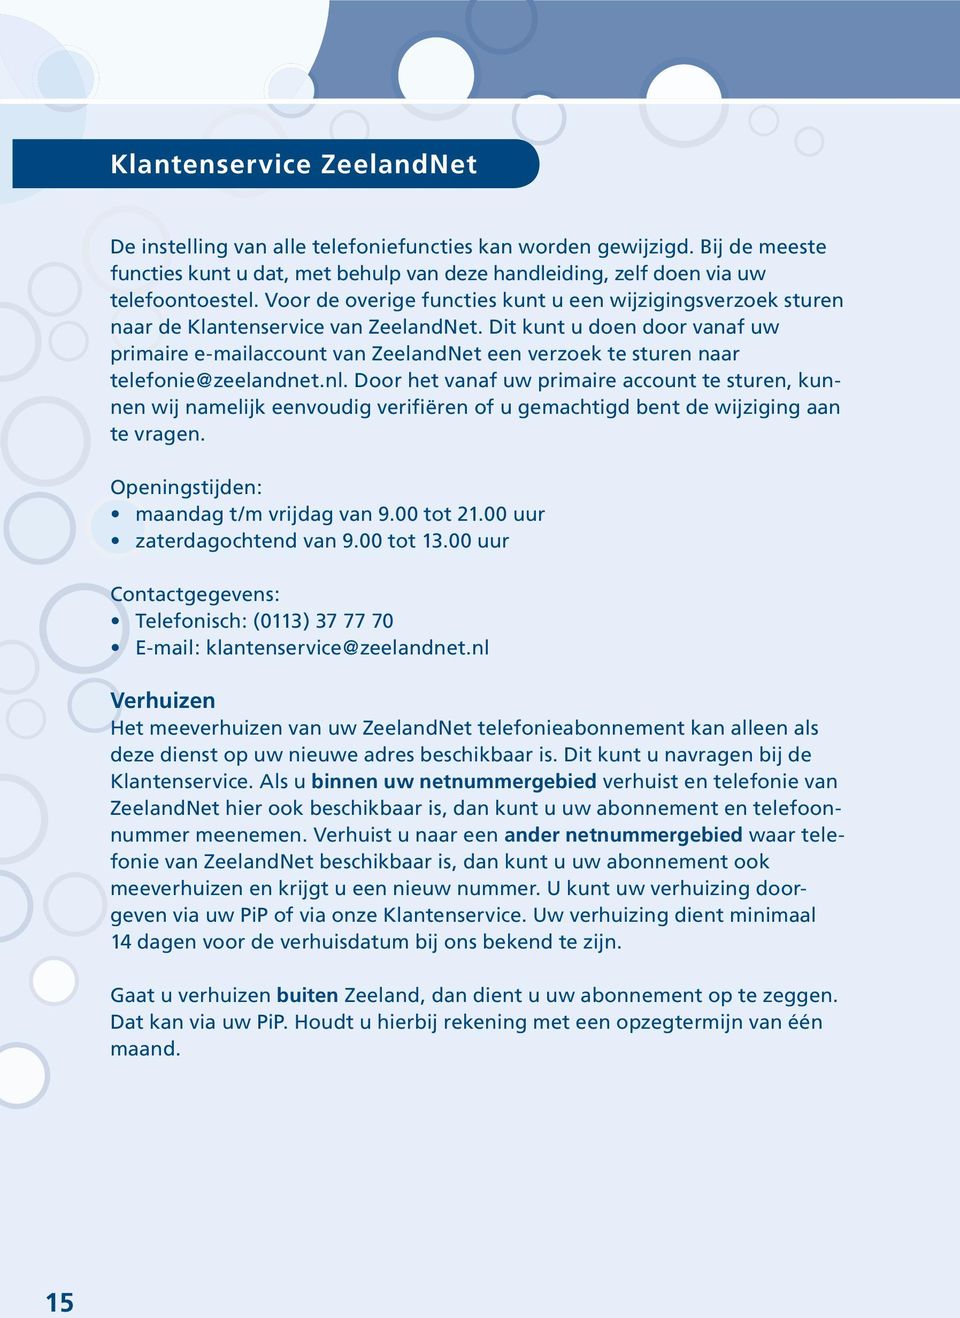 Dit kunt u doen door vanaf uw primaire e-mail account van ZeelandNet een verzoek te sturen naar telefonie@zeelandnet.nl.